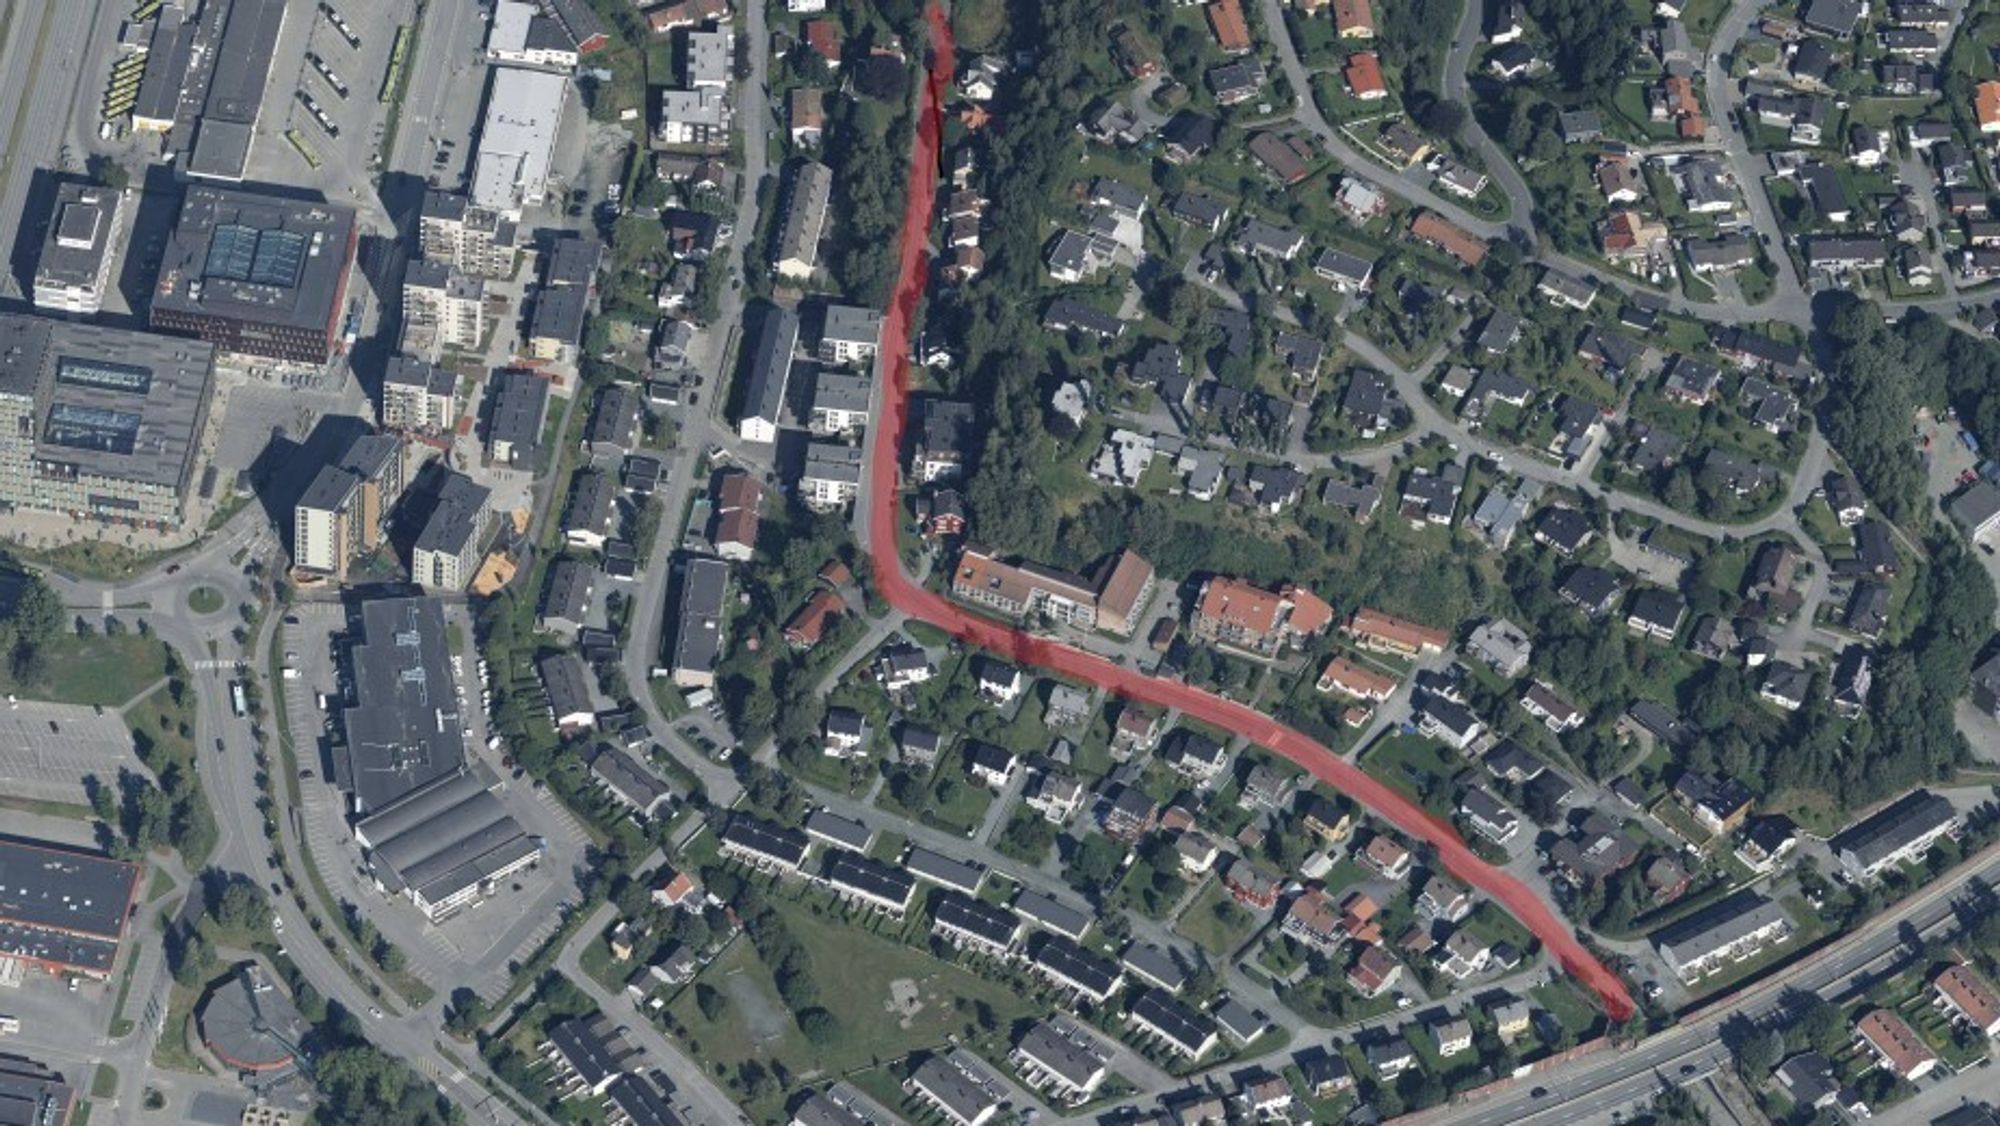 Prosjektyet skal skje langs Klæbuveien mellom Omkjøringsvegen og Øystein Møylas veg i Trondheim